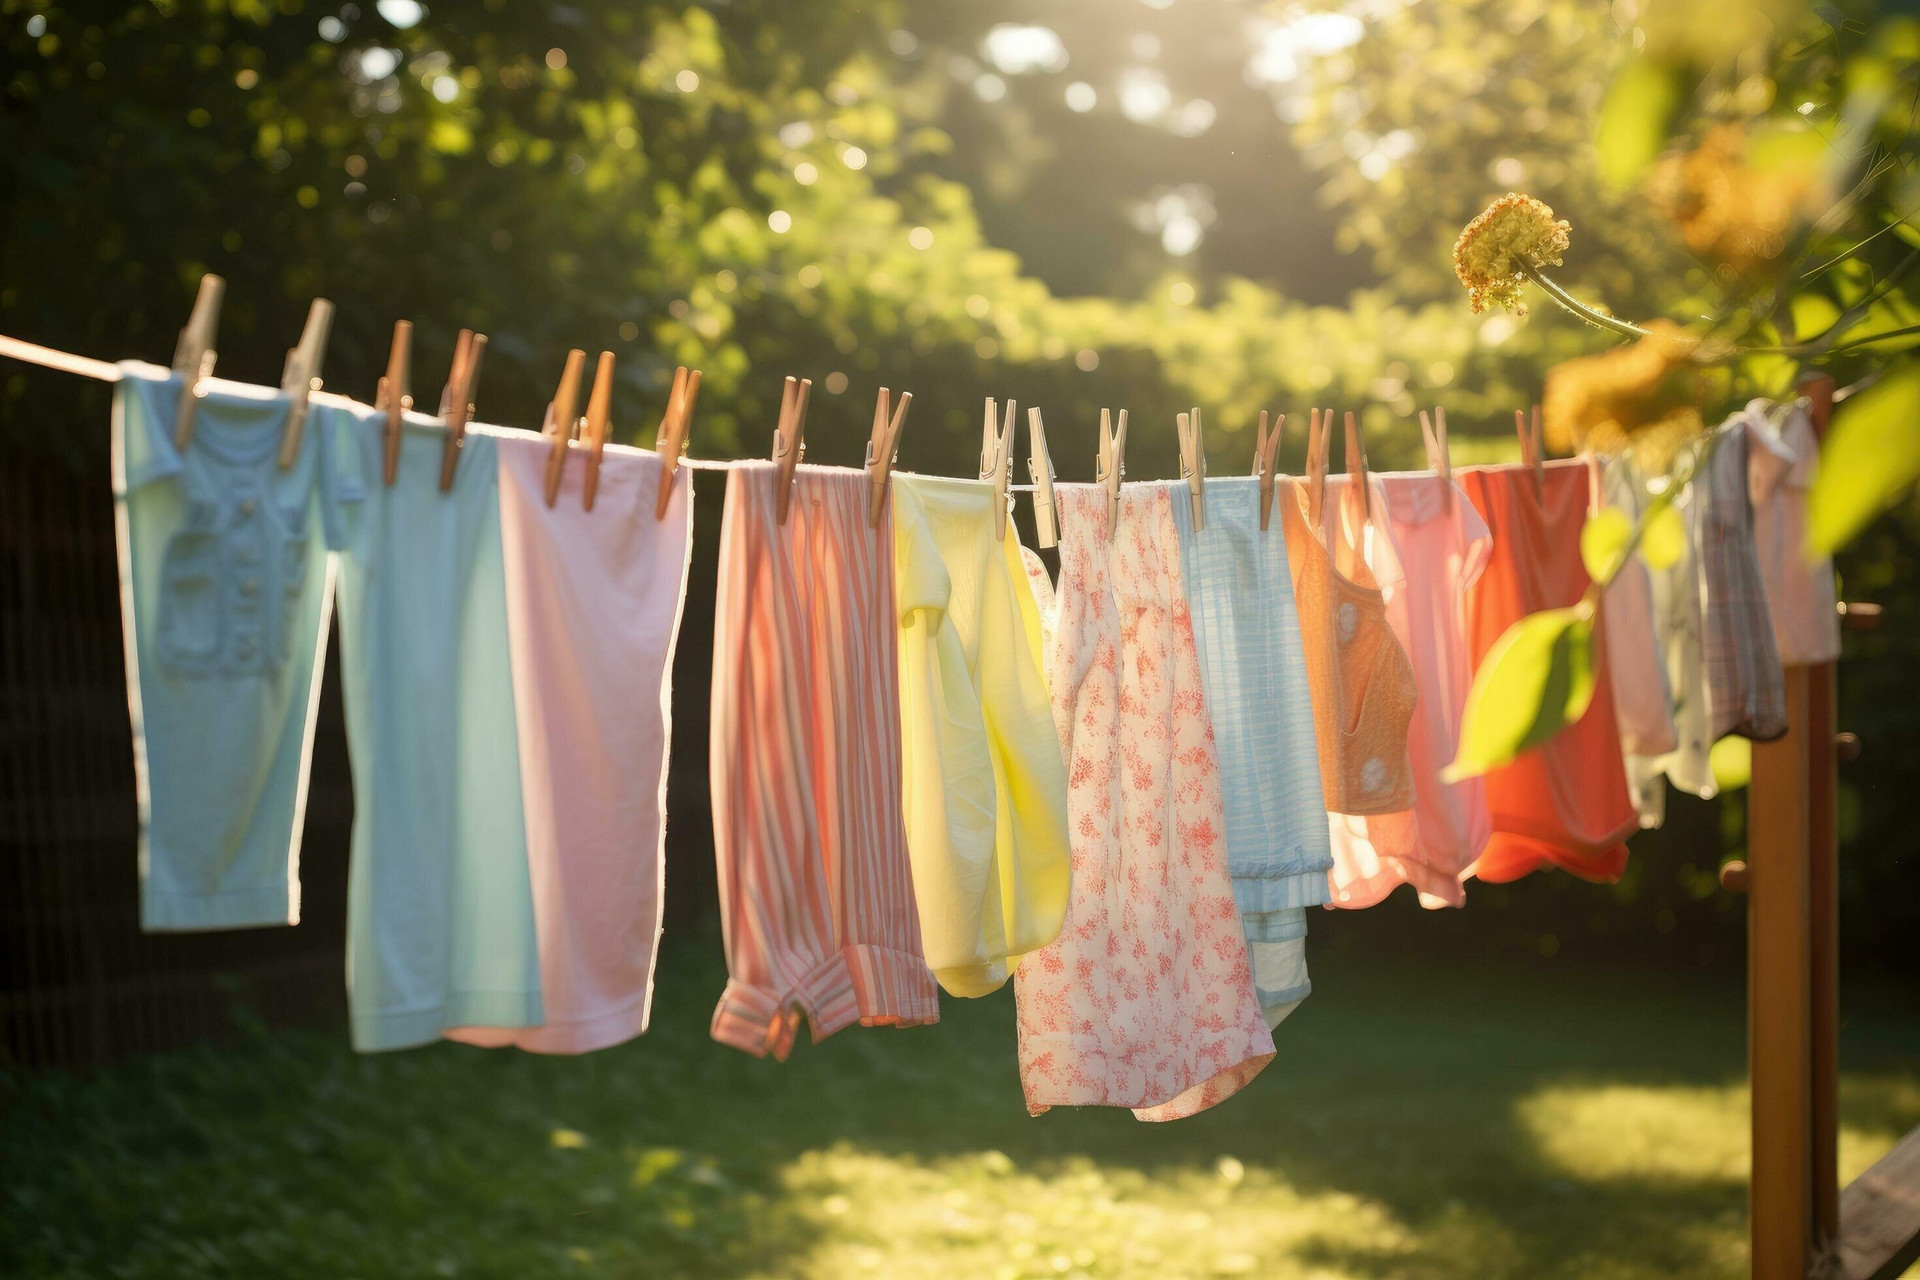 Quần áo giặt xong nếu để lâu trong máy giặt không chỉ dễ sinh ra vi khuẩn mà còn gây ra mùi hôi khó chịu và quần áo bị nhăn nheo. (Ảnh: Vecteezy)